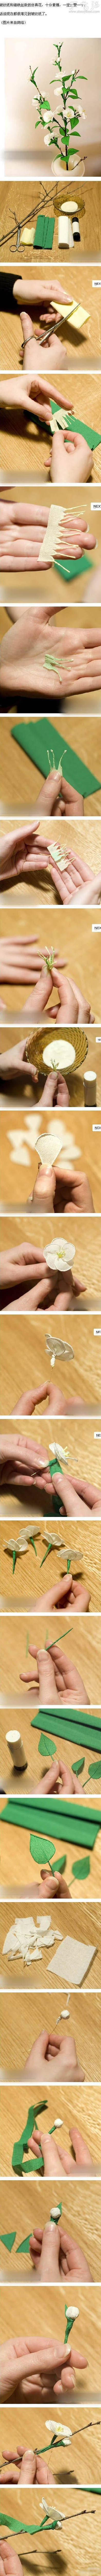 皱纹纸和铁丝DIY仿真花的教程 